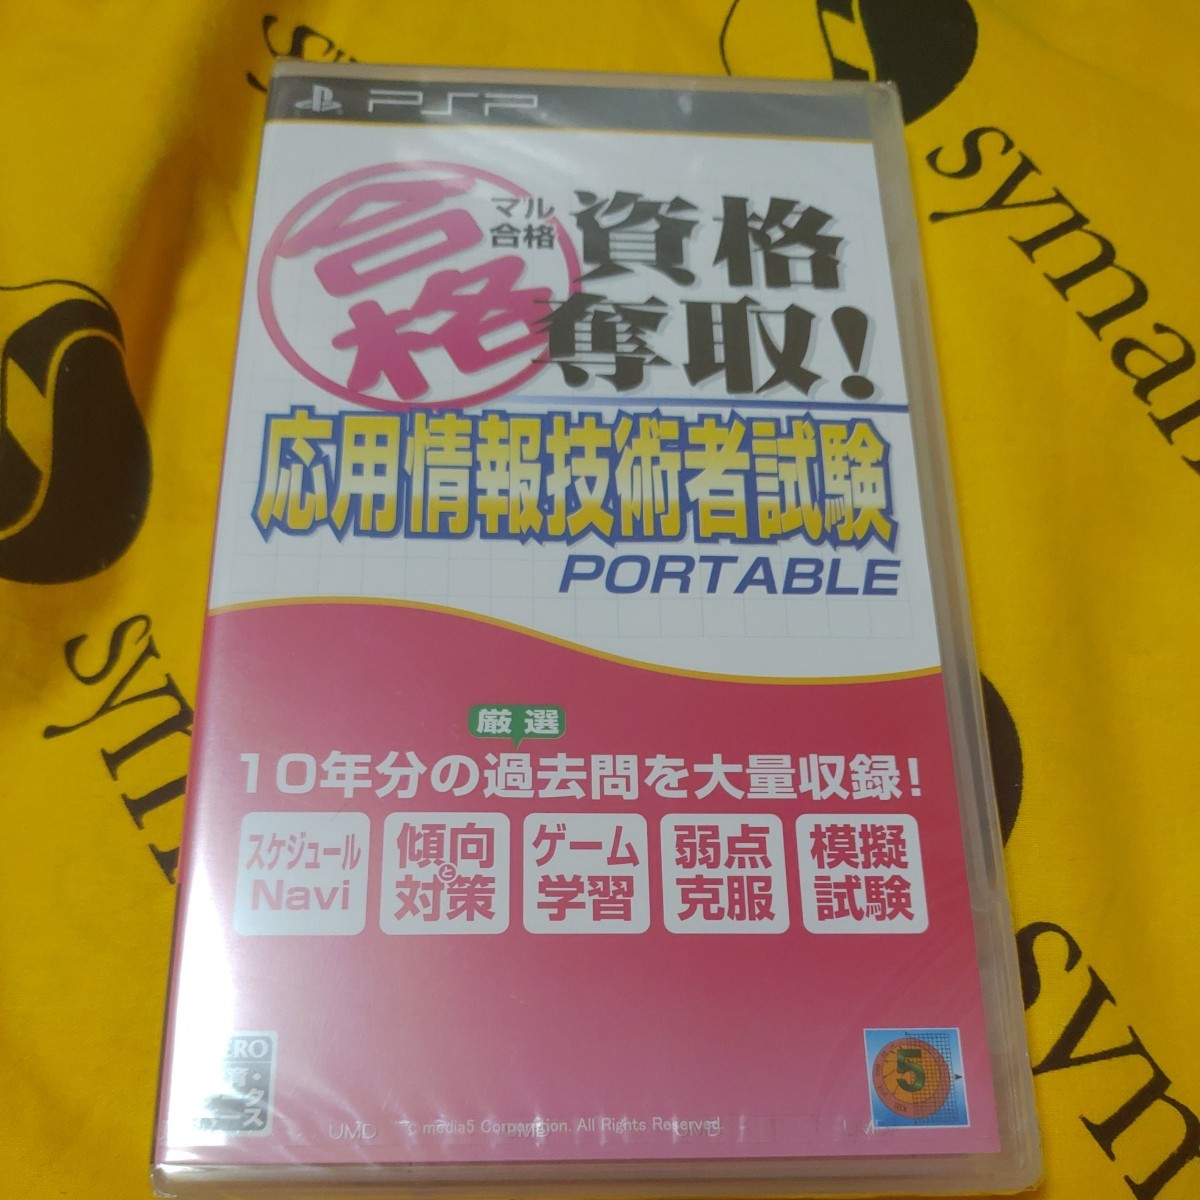 【PSP】 マル合格資格奪取！応用情報技術者試験 ポータブル